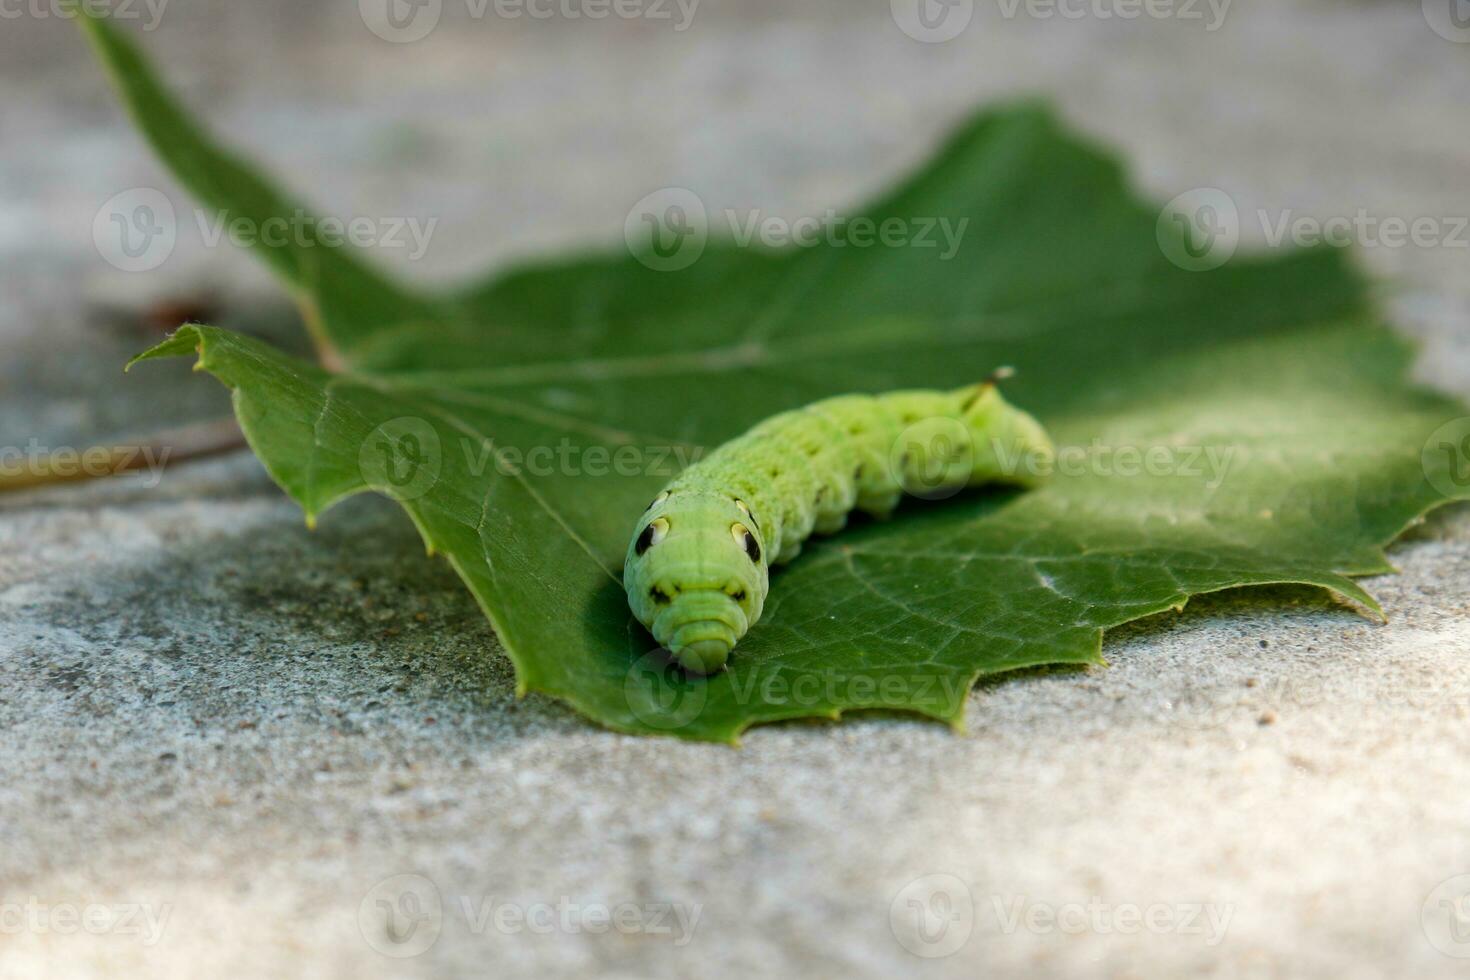 groß Grün Raupe Deilephila Elpenor auf ein Grün Blatt foto